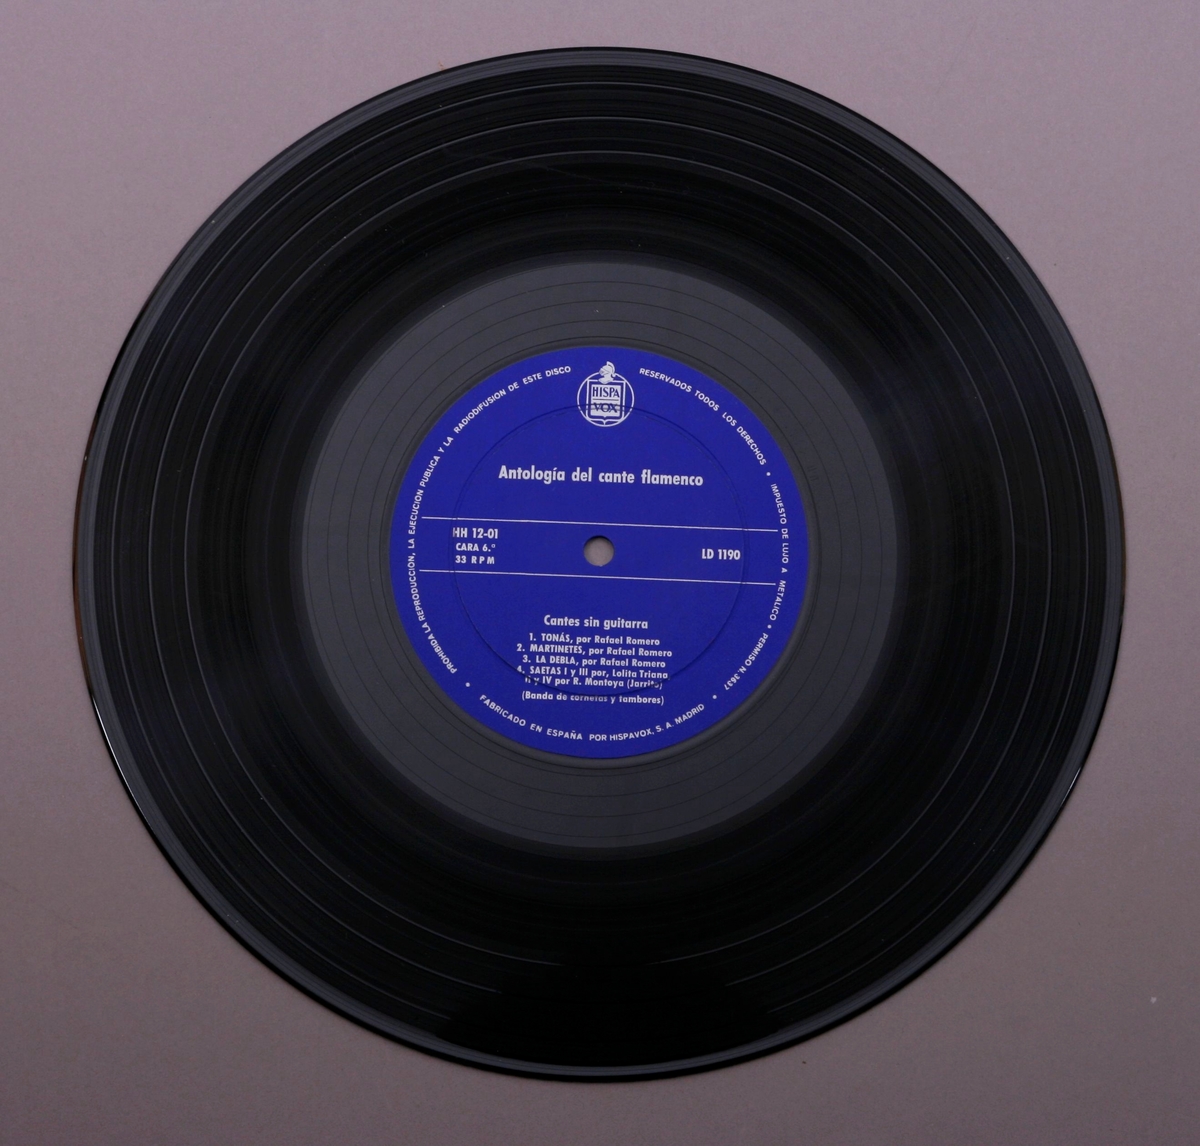 Tre grammofonplater i svart vinyl og et plateomslag i form av en eske, i papp trukket med stoff. Et teksthefte. Platene ligger i plastlommer og papirlommer.